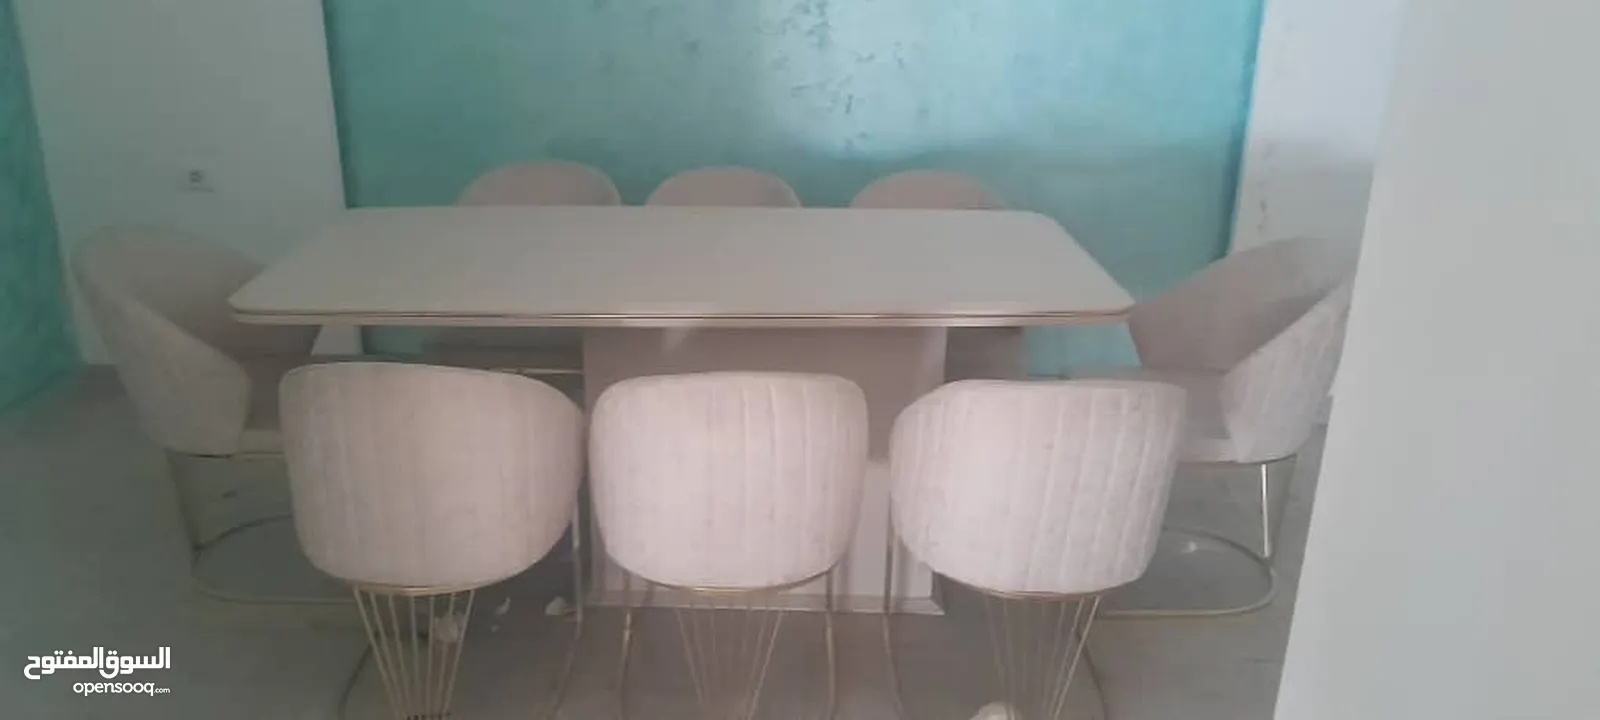 طاولة اكل تحمل 8كراسي  شبه جديده